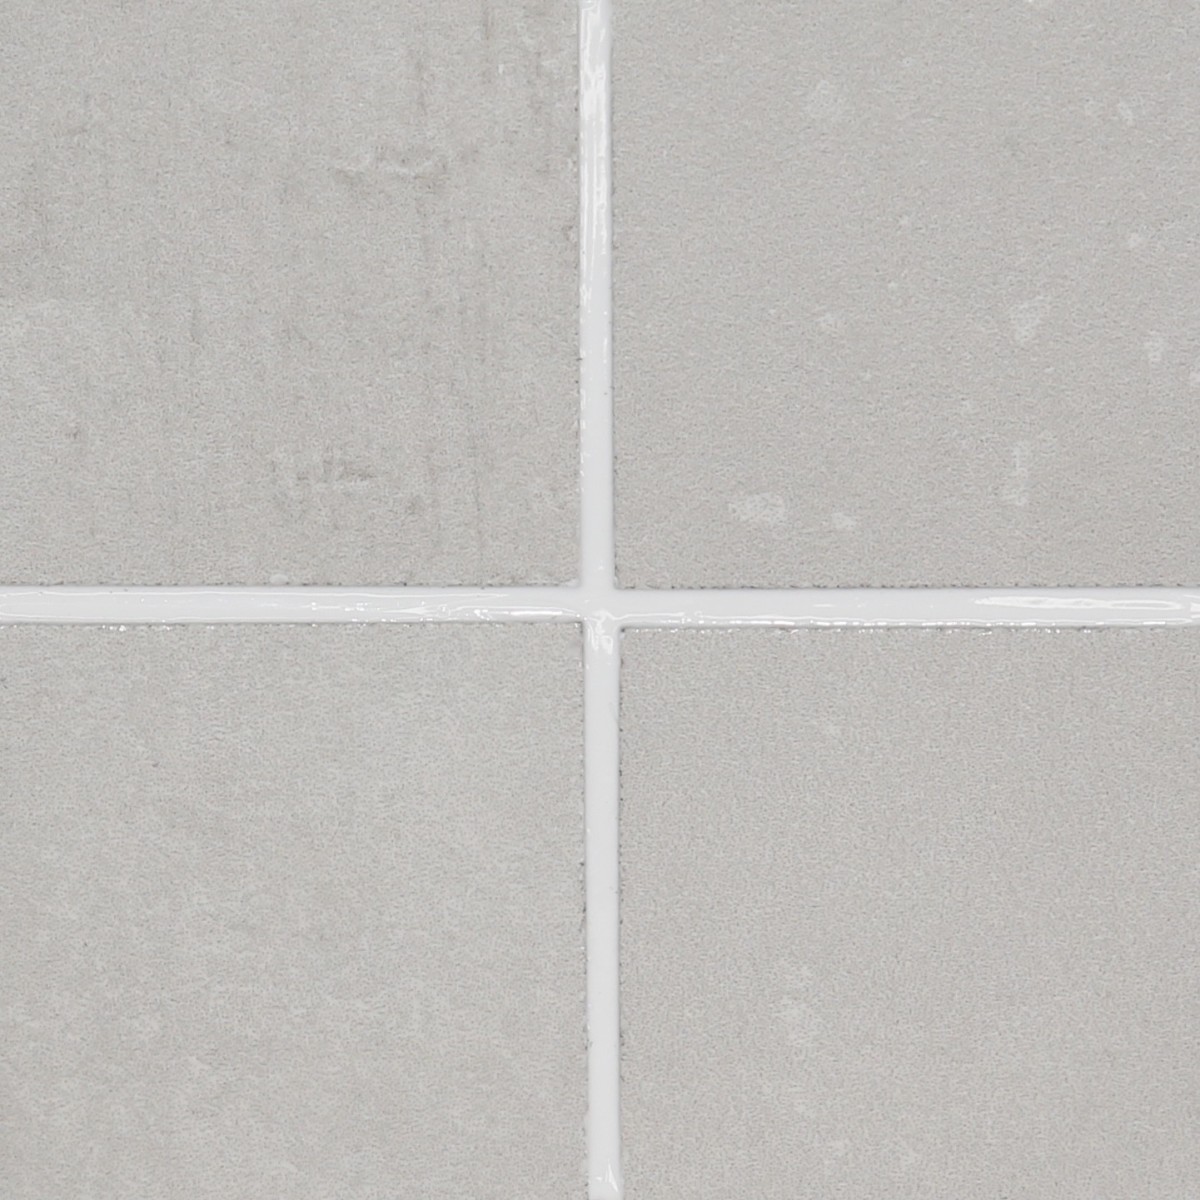 Blanchir les joints de carrelage / Blanch the tile joints 